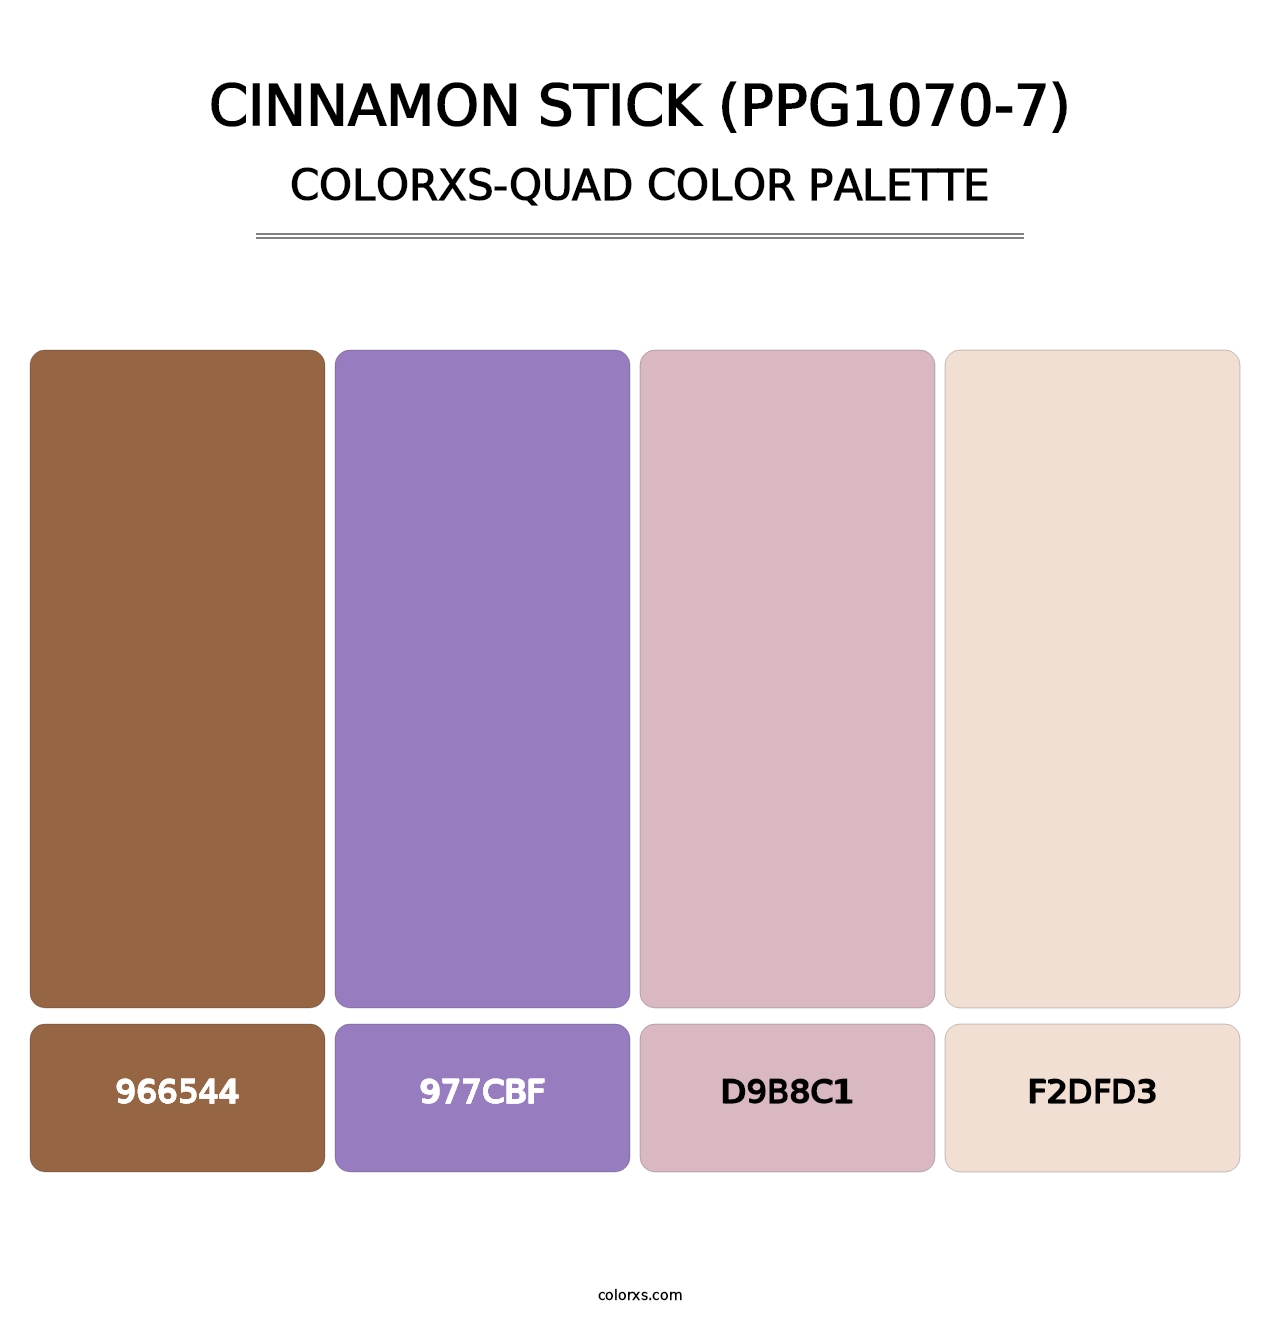 Cinnamon Stick (PPG1070-7) - Colorxs Quad Palette